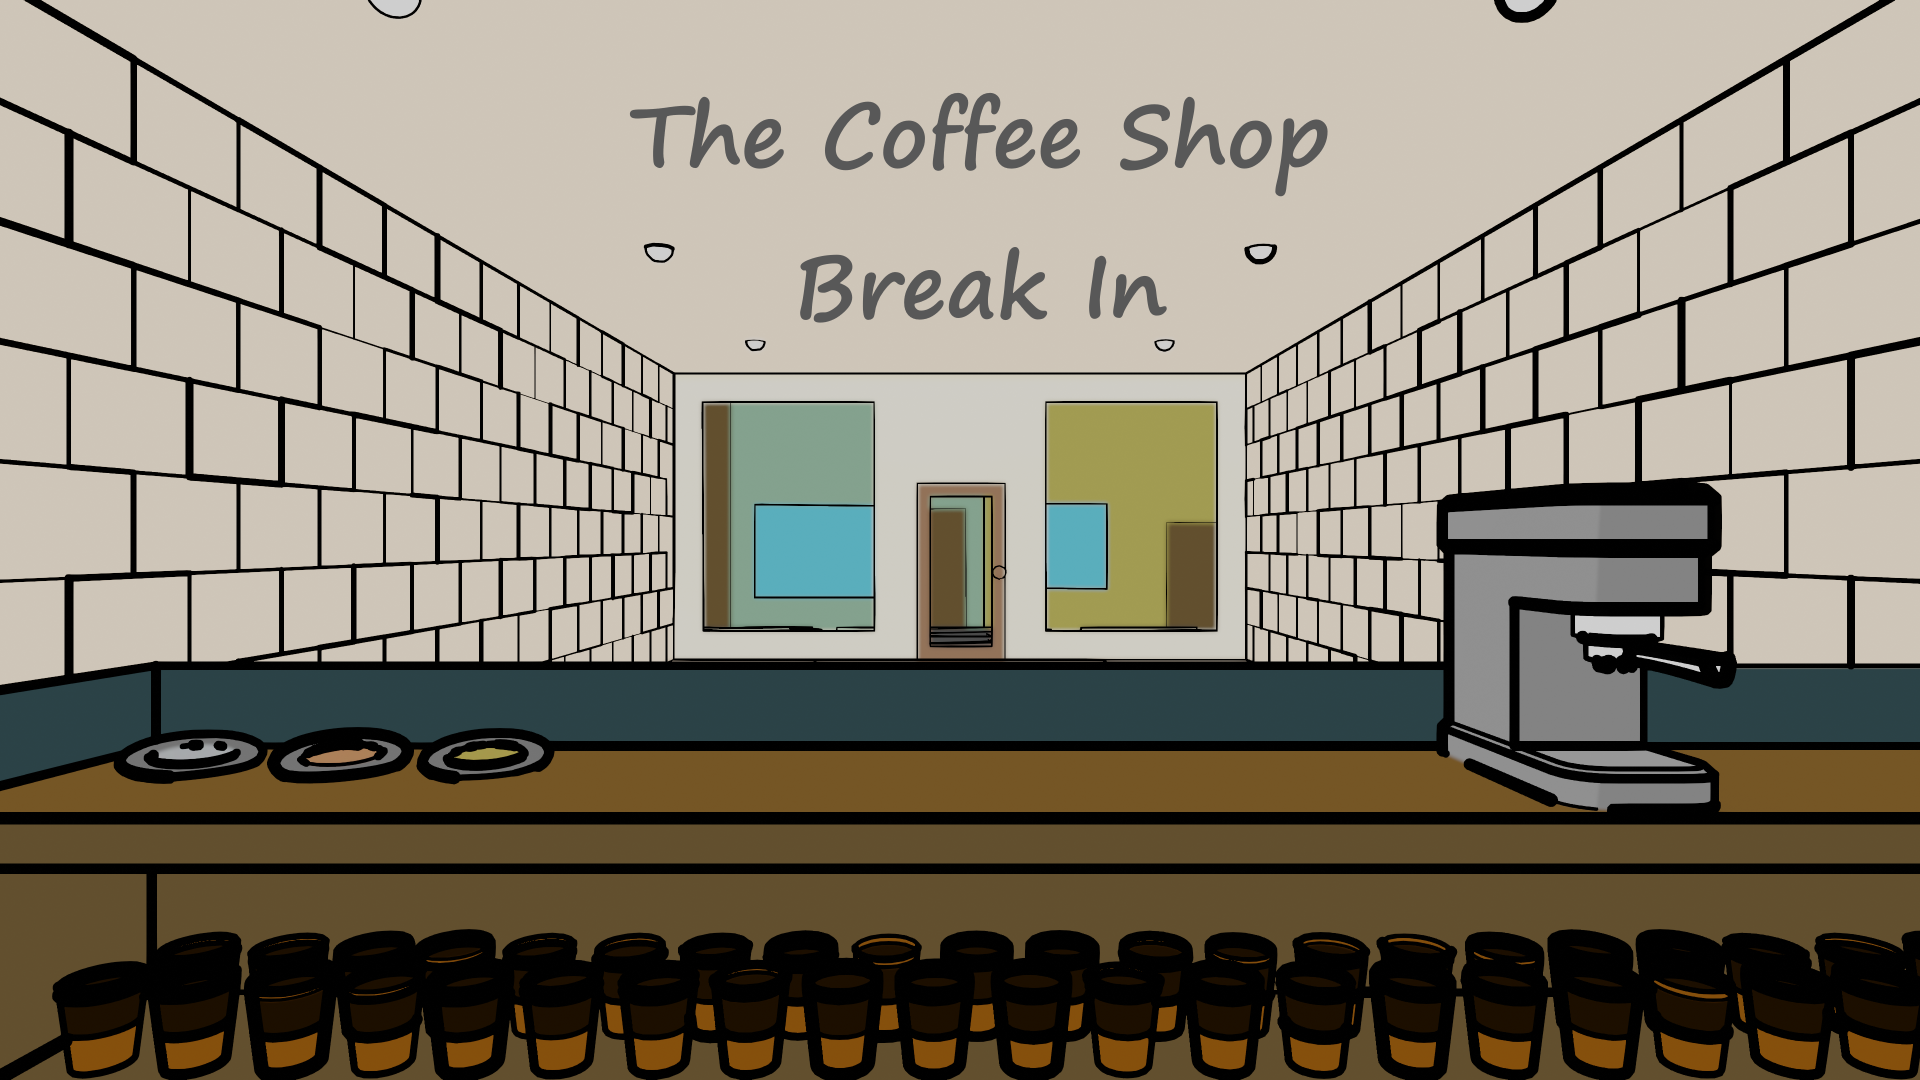 The Coffee Shop Break In